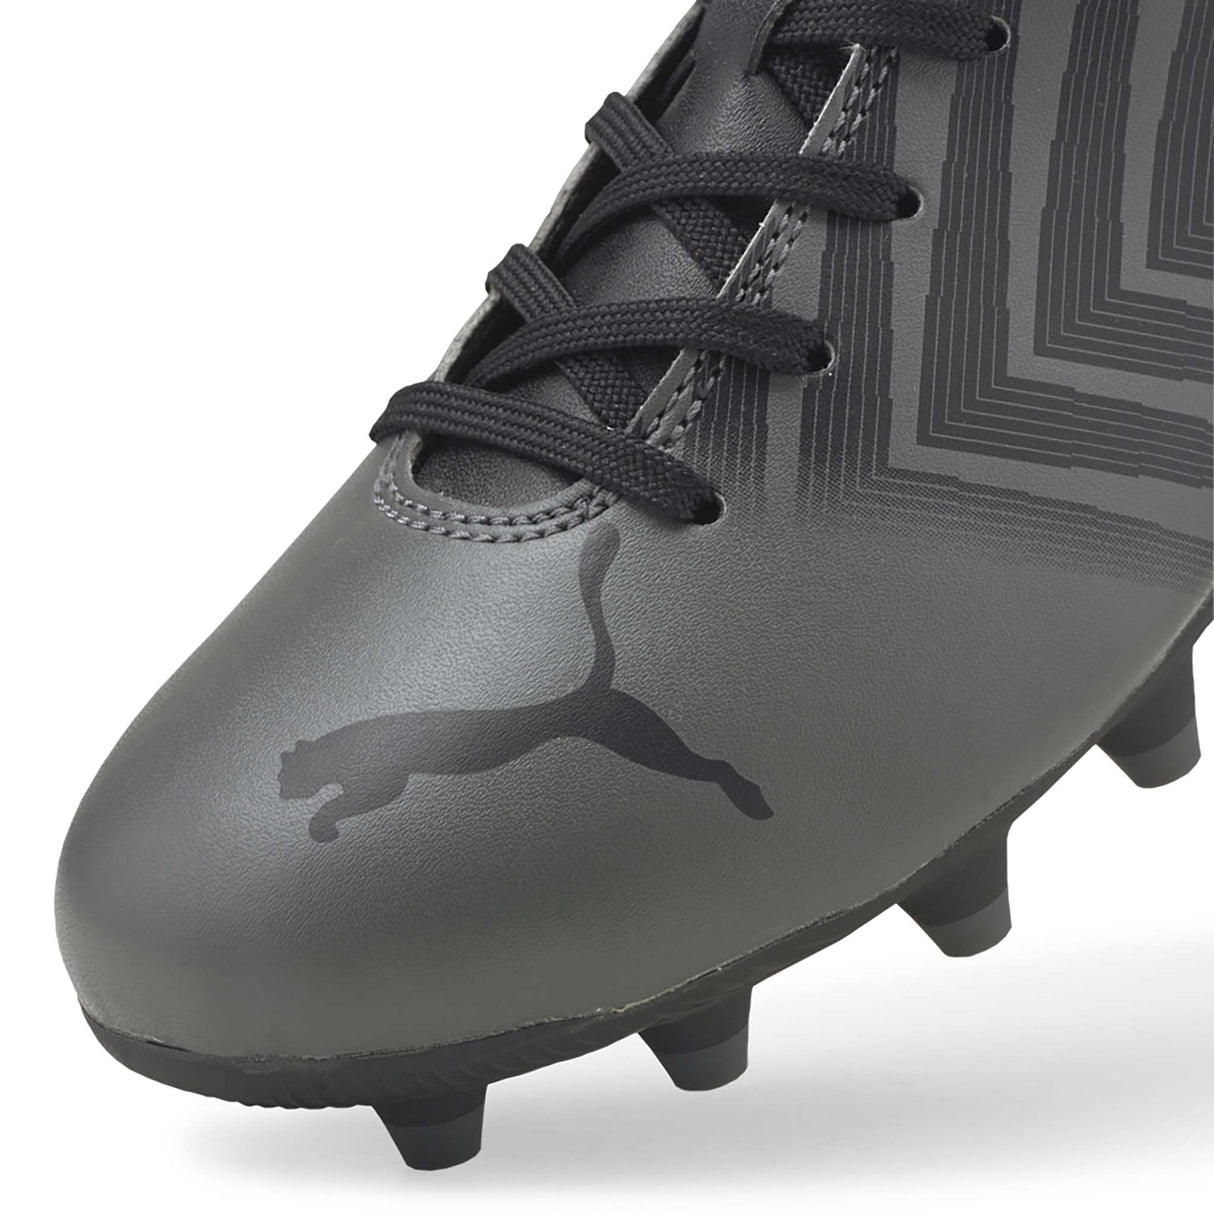 Puma Tacto II FG/AG Junior souliers soccer crampons gris noir enfant pointe